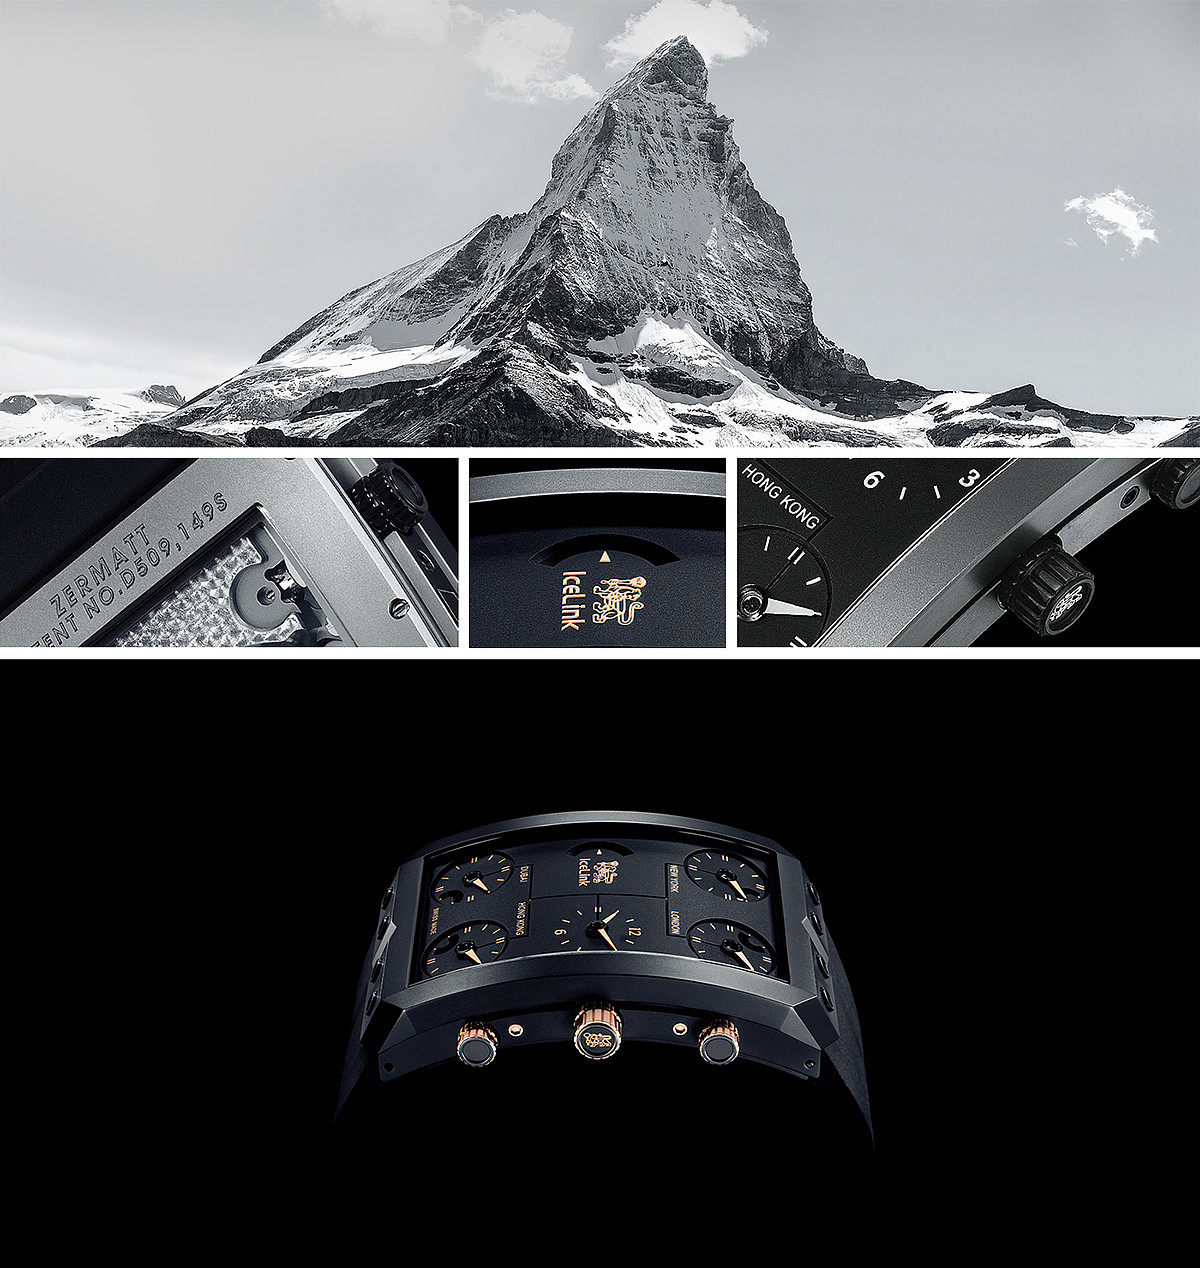 Ice Link，Zermatt，腕表，